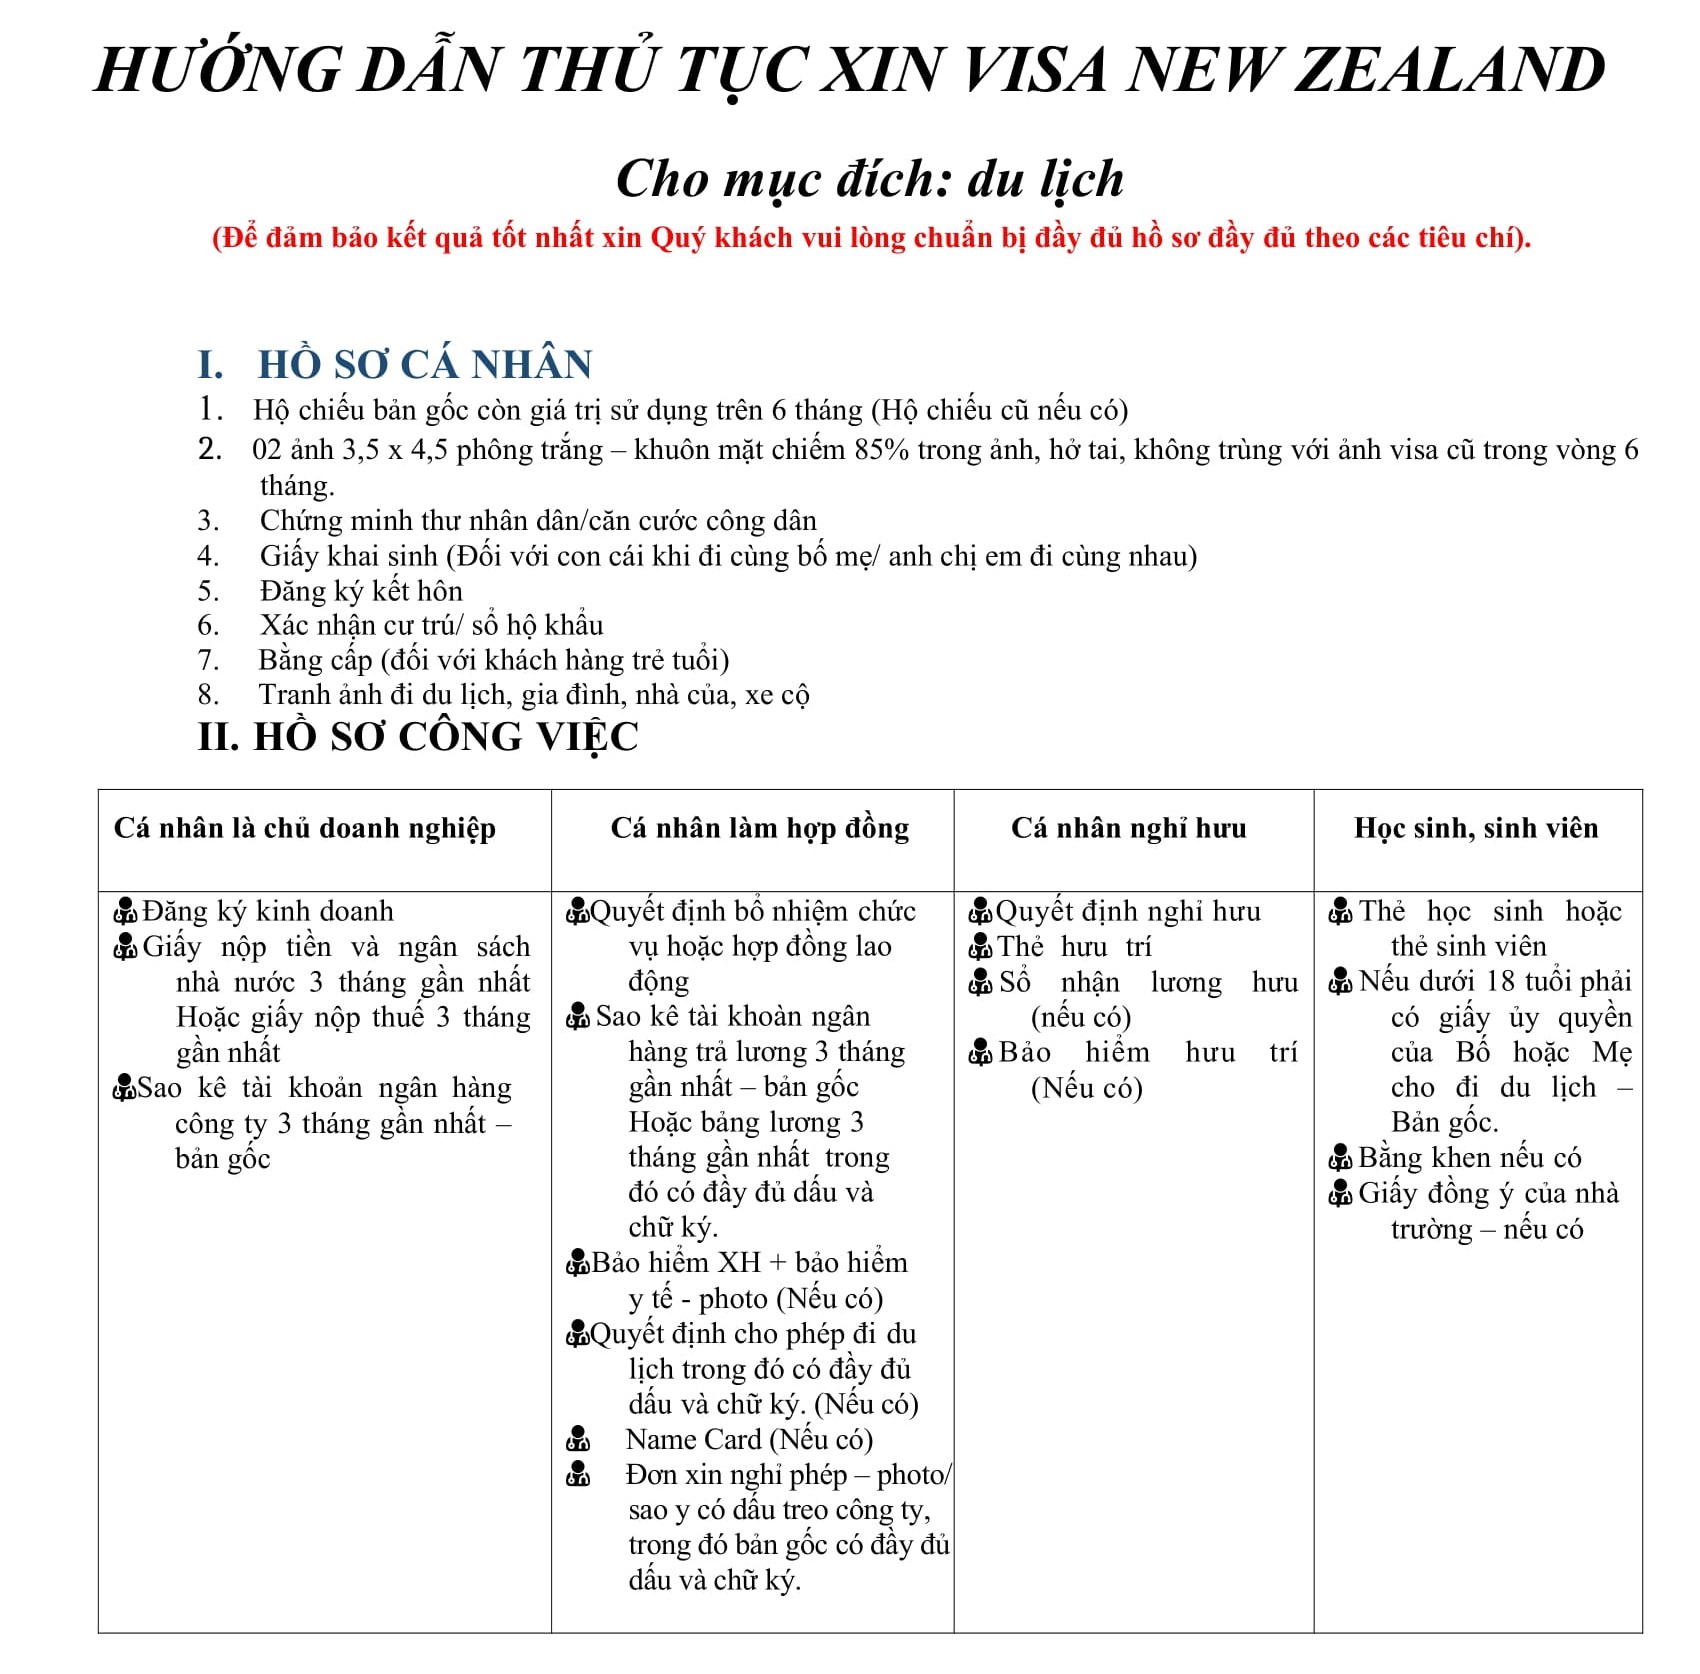 Hồ sơ và thủ tục Visa New Zealand du lịch 